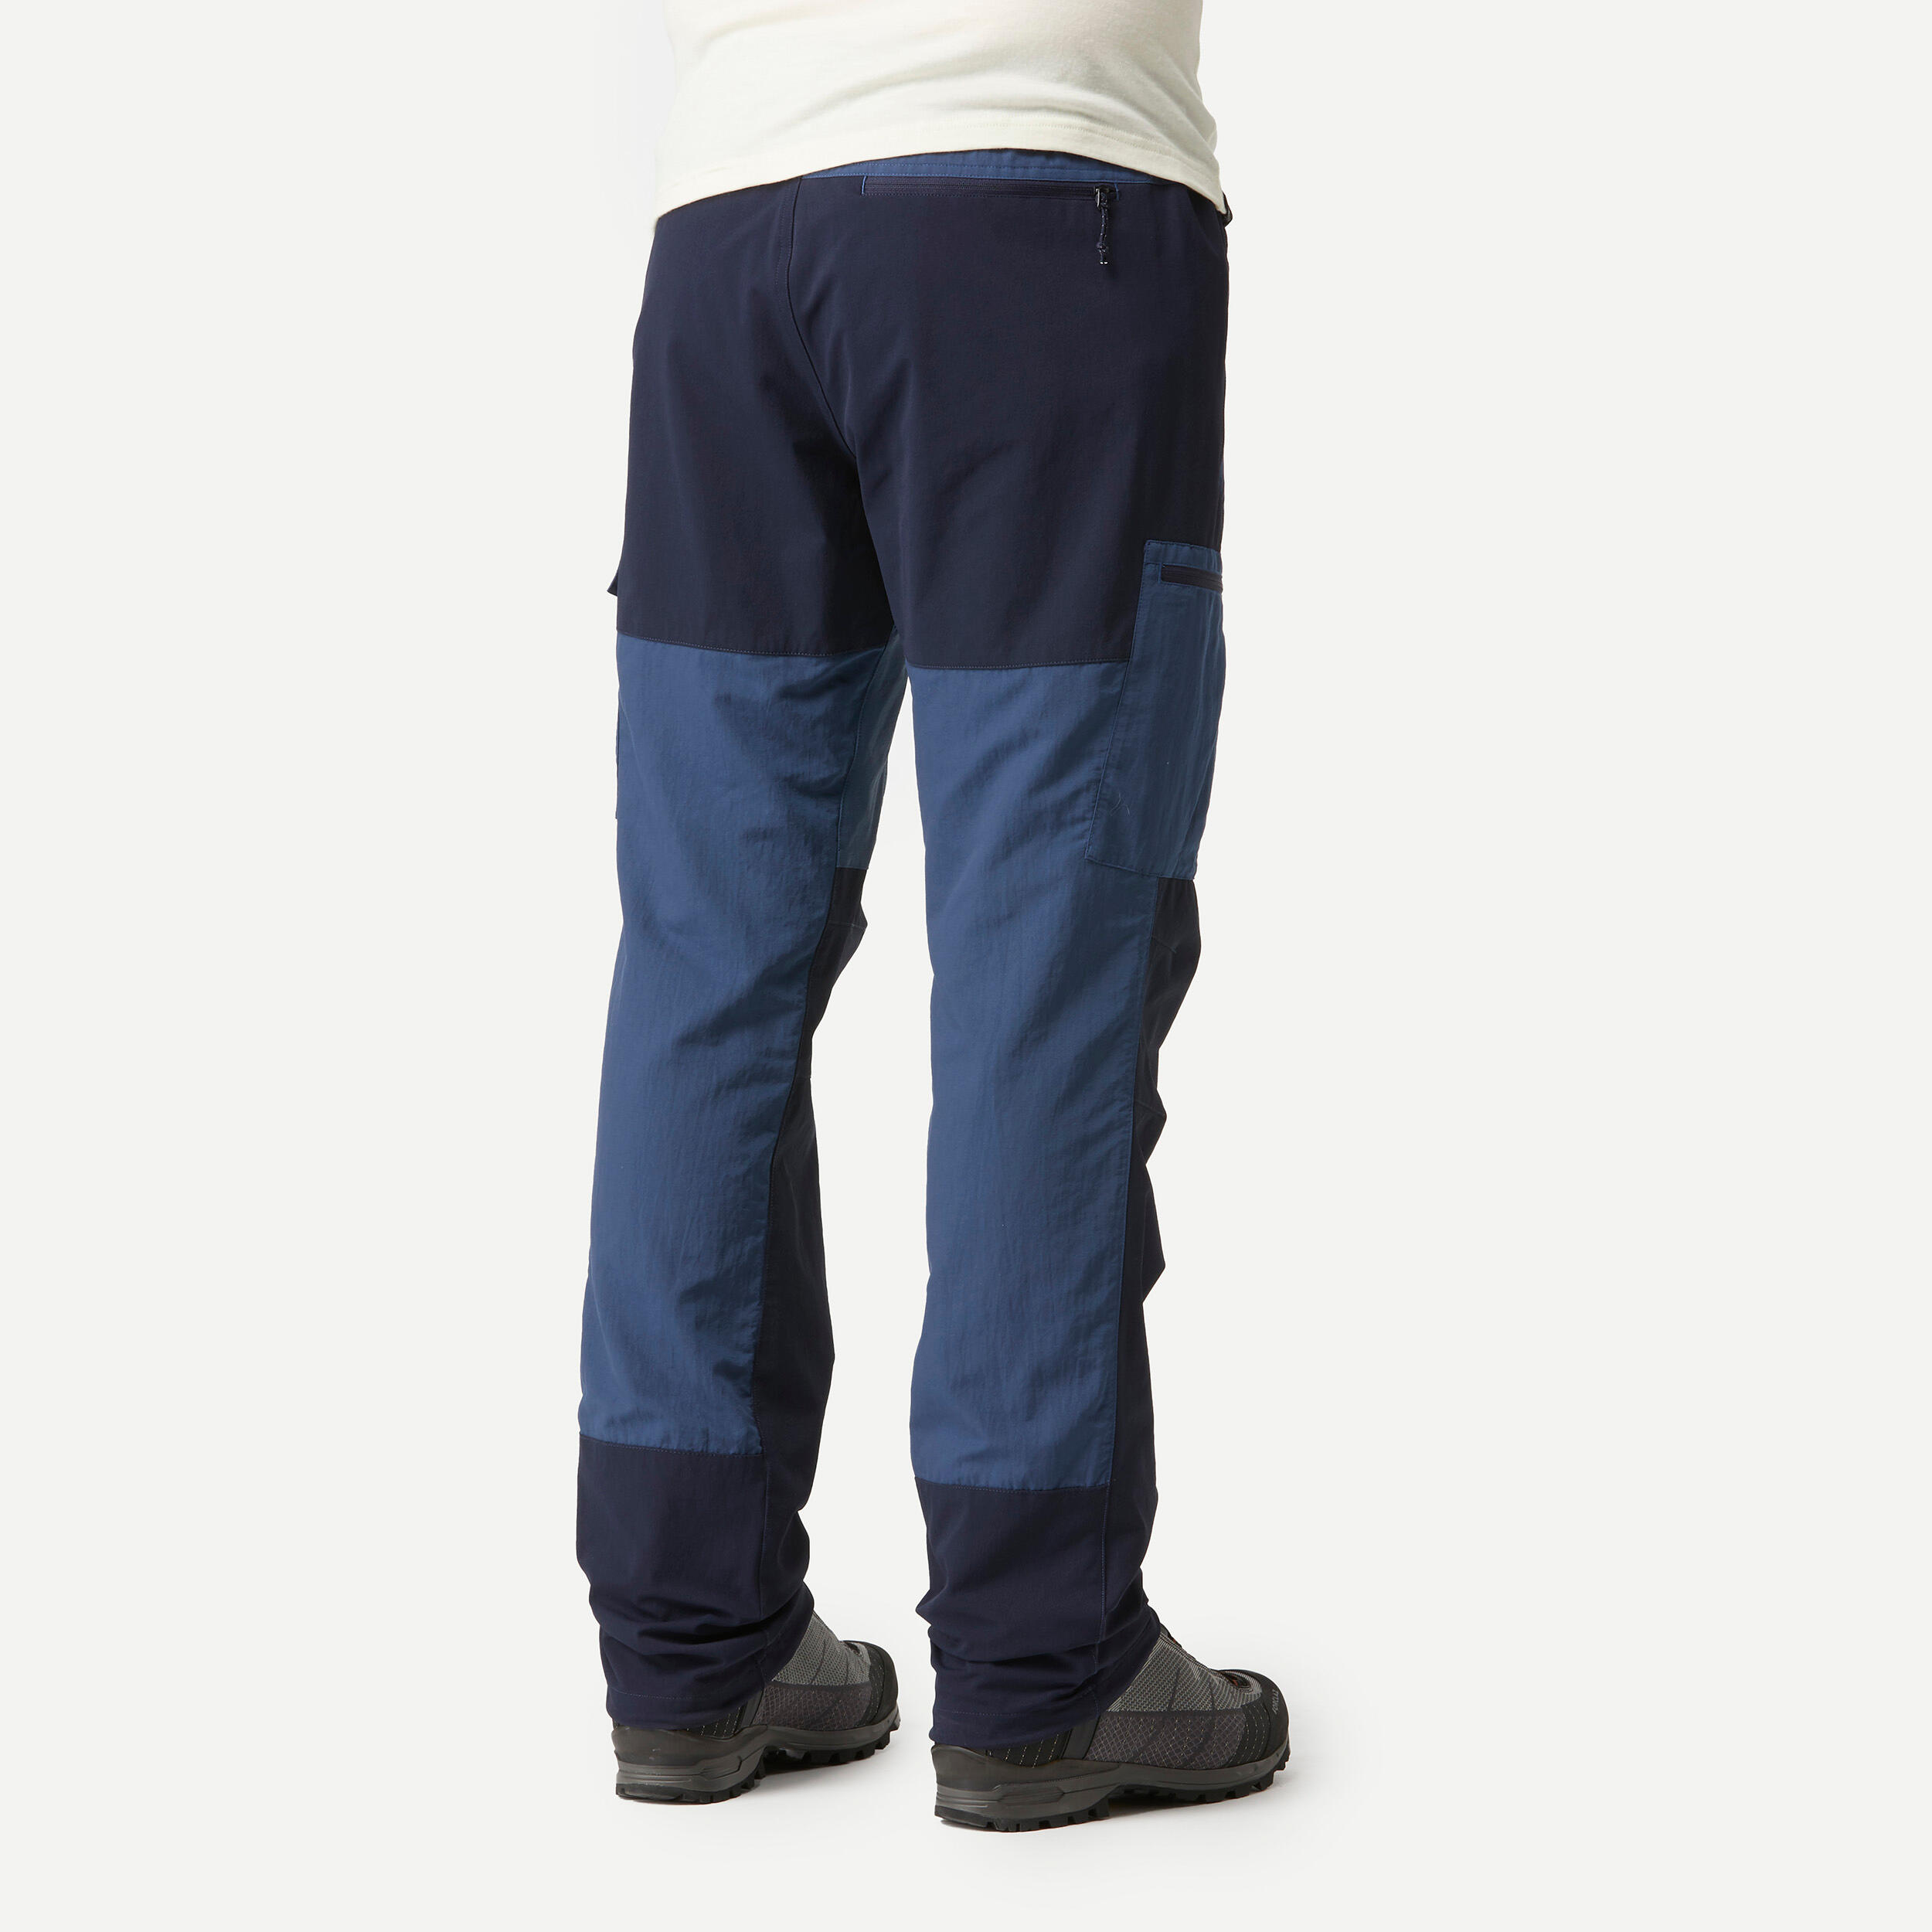 Pantalon de randonnée homme – MT 500 bleu - FORCLAZ